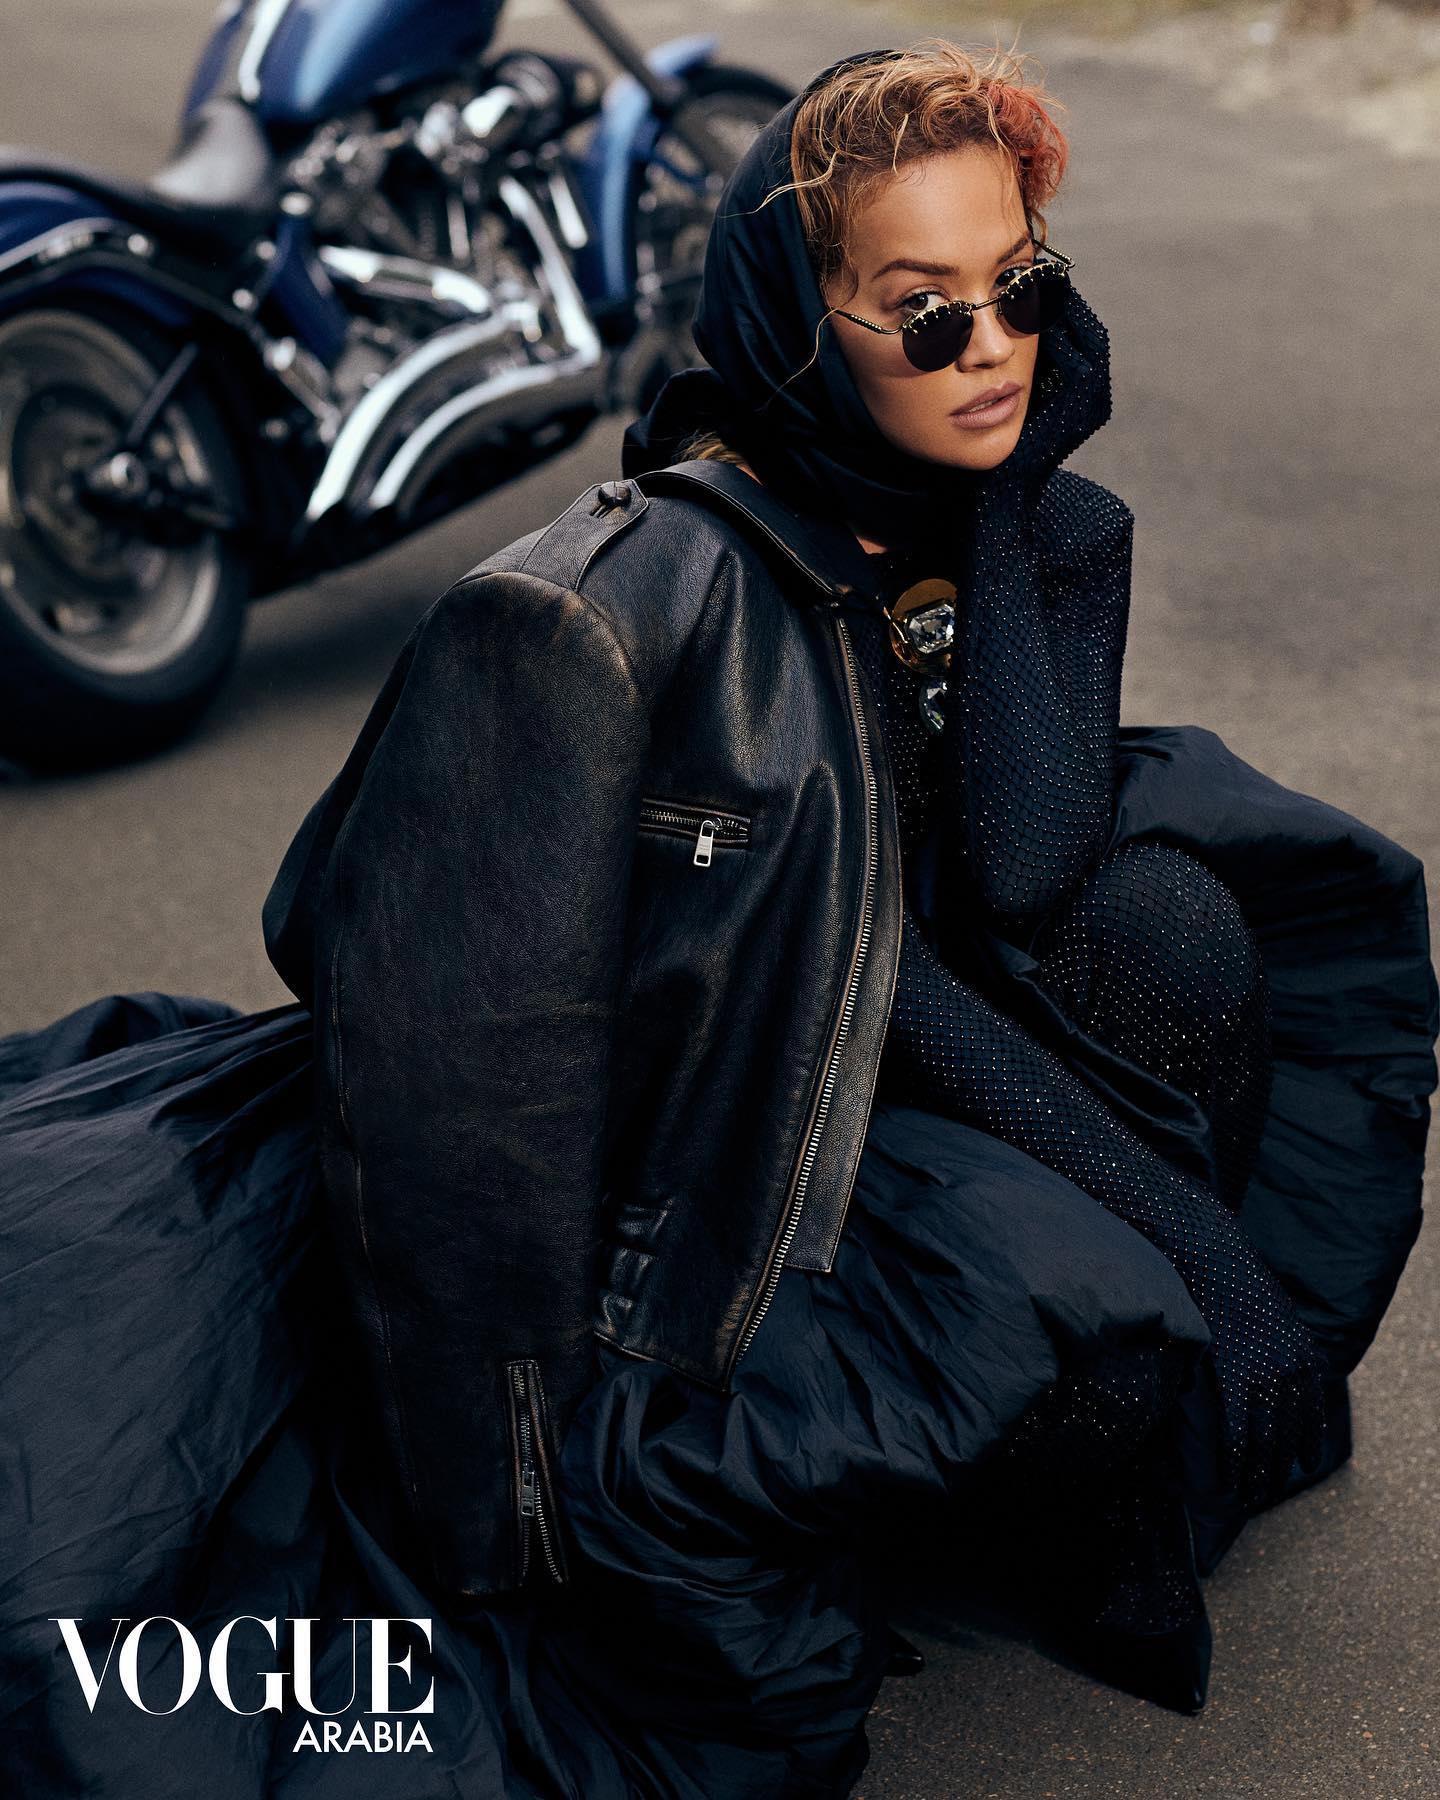 Rita Ora pozon për revistën “Vogue Arabia”